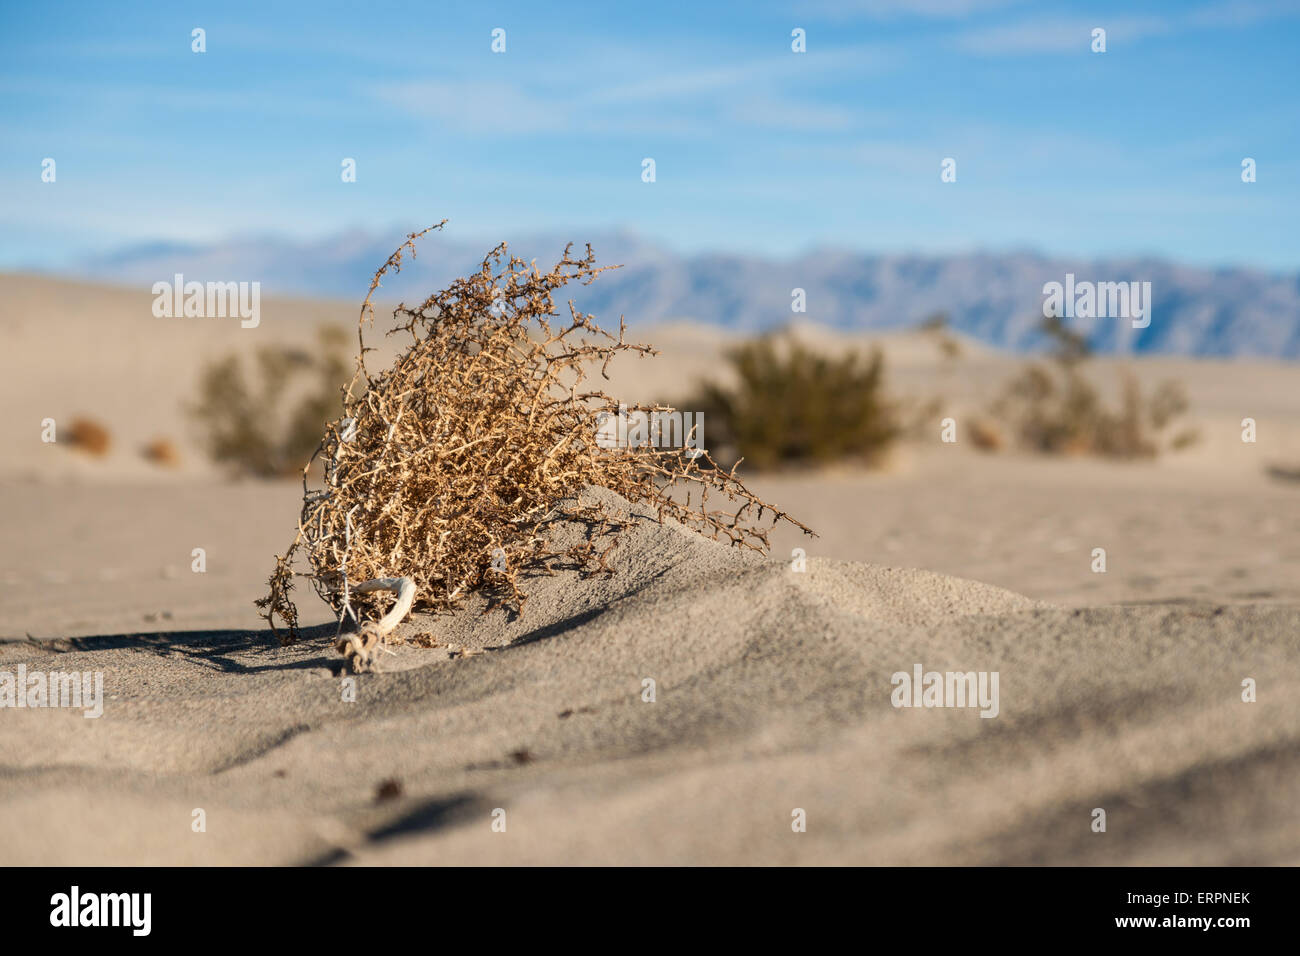 Toten Tumbleweed liegt auf einem Meer aus Sand in der Mojave-Wüste Südkaliforniens. Stockfoto